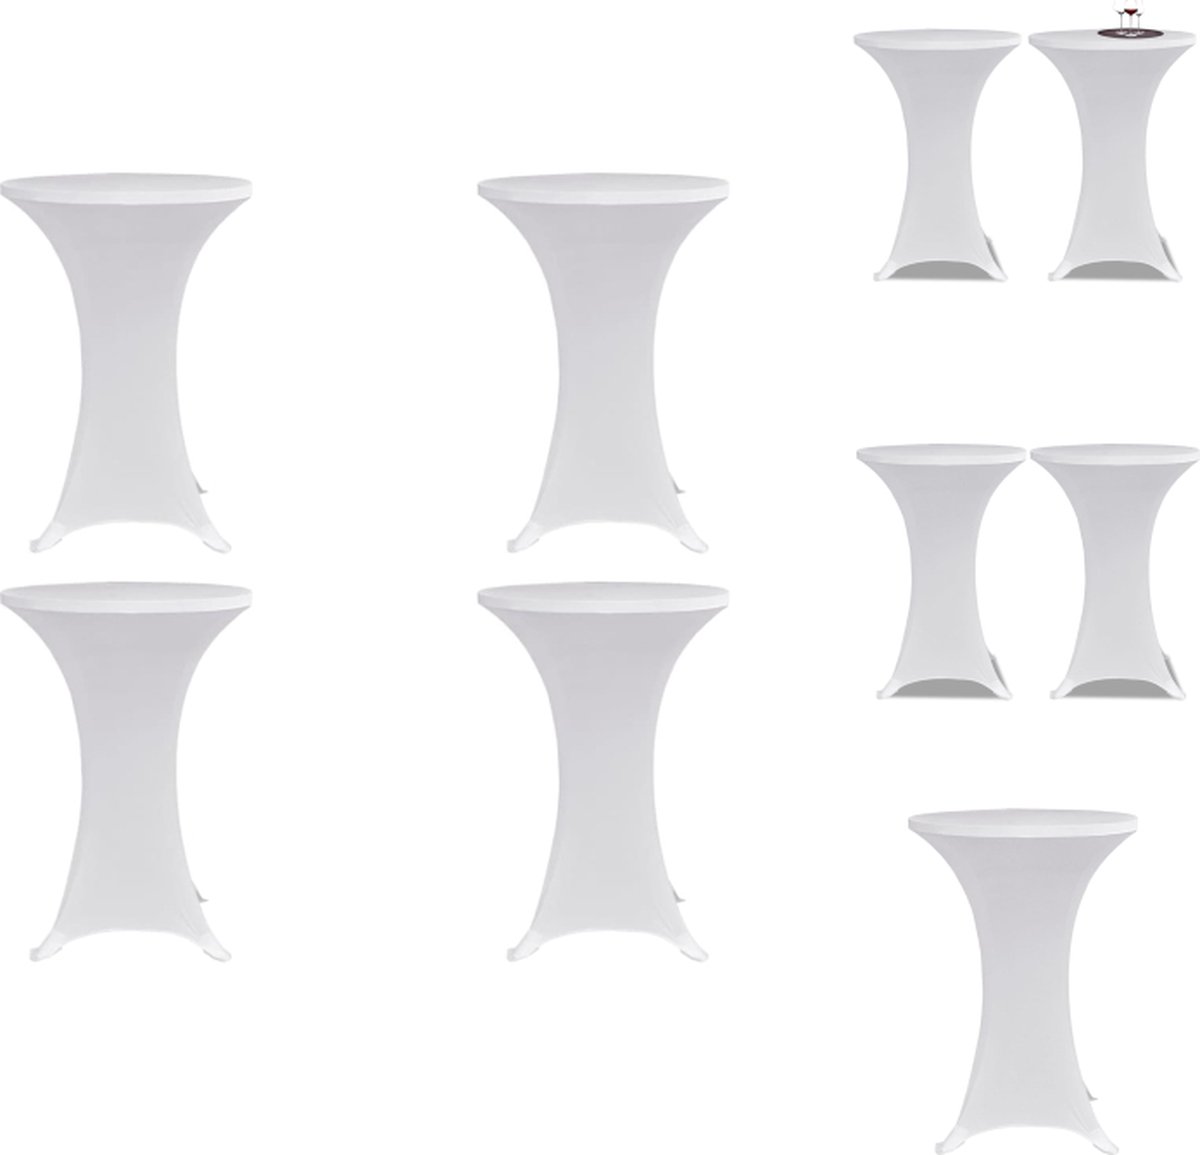 VidaXL Statafelhoes Wit Geschikt voor tafels tot 120 cm Stretchstof 10% Spandex Tuinmeubelhoes